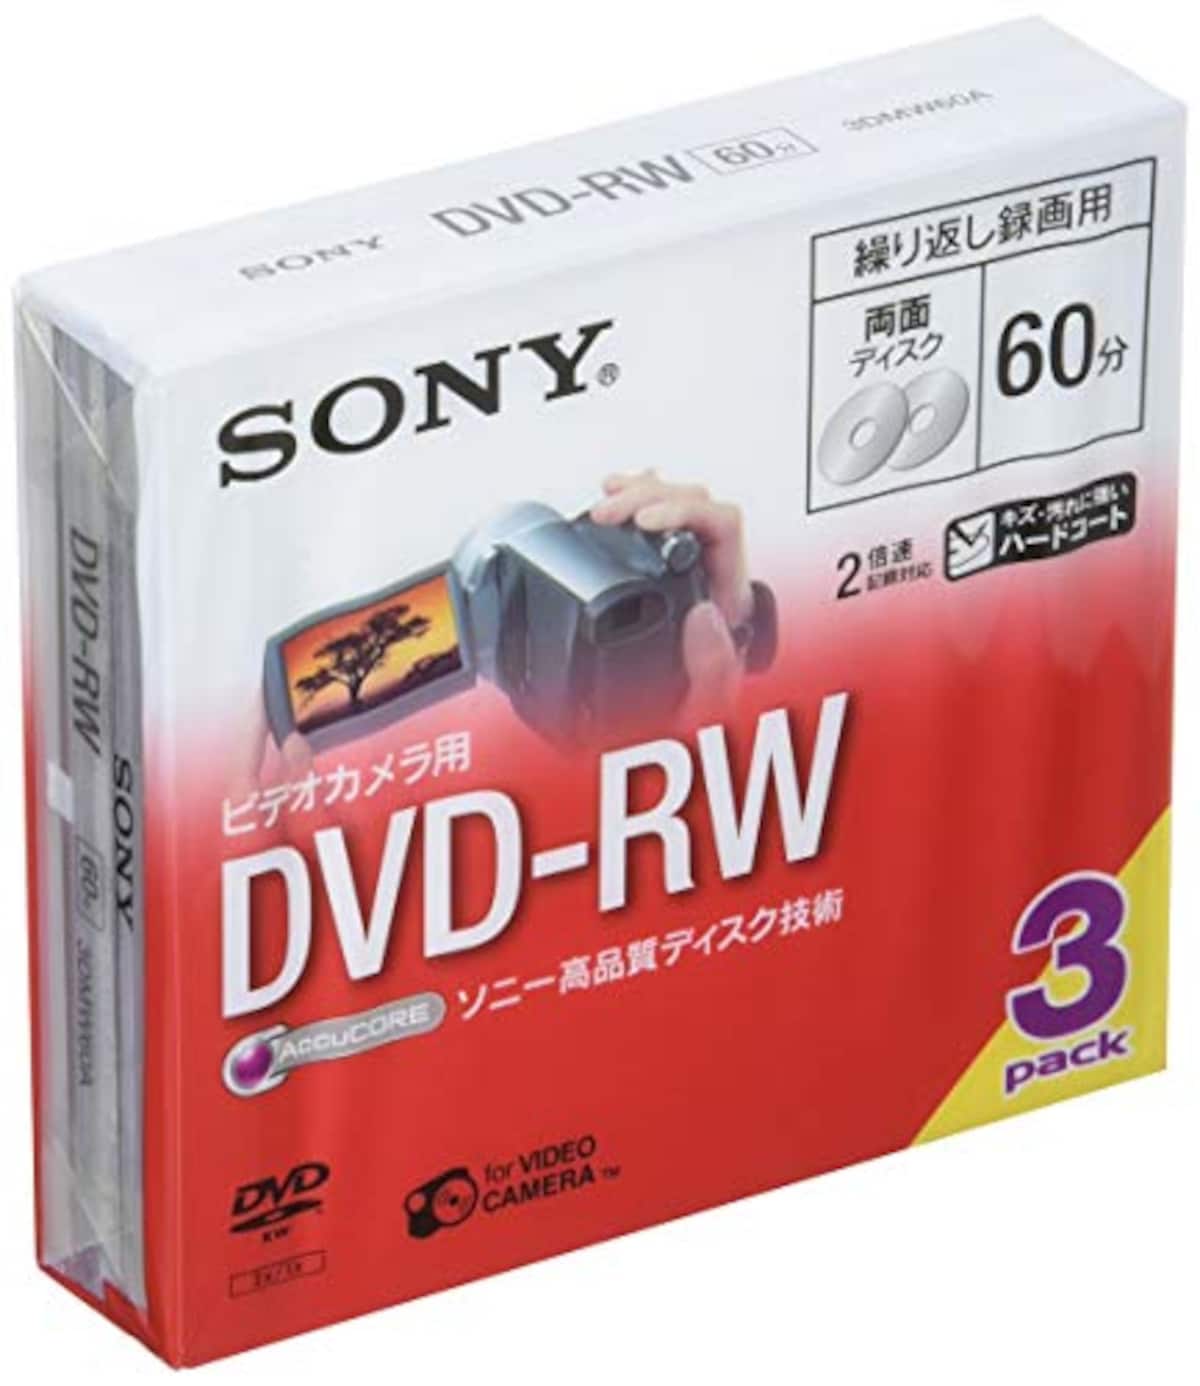 ビデオカメラ用DVD-RW（8cm）